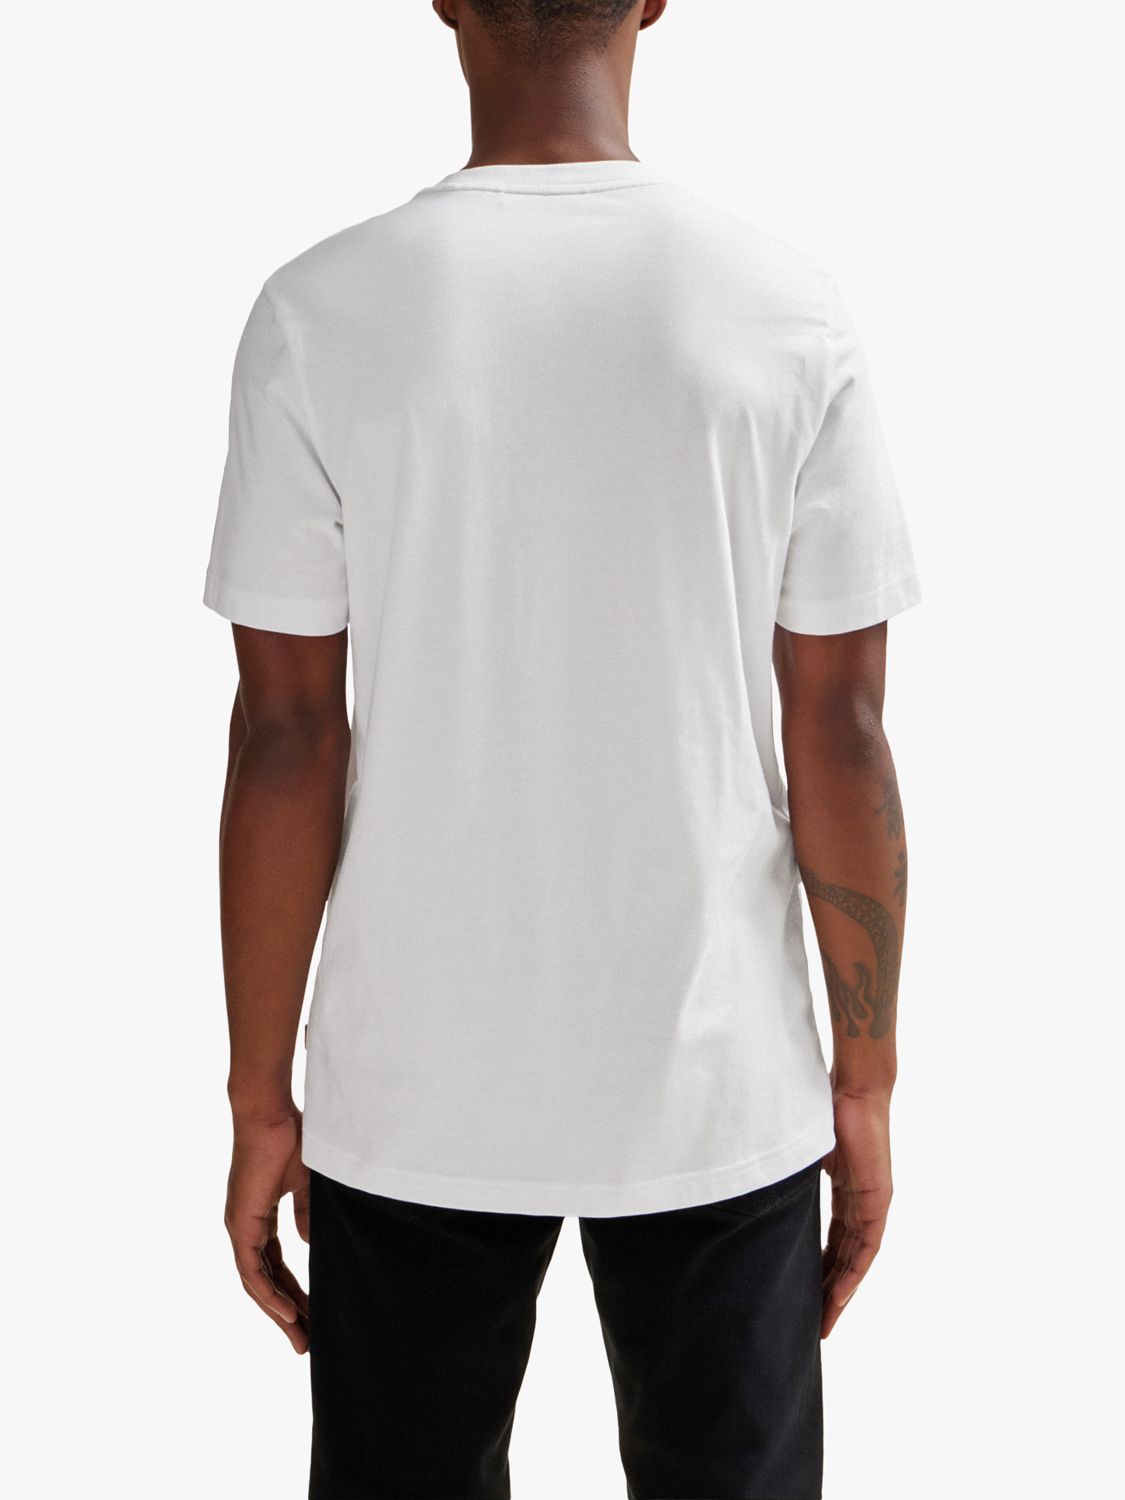 BOSS Tartan Logo Cotton T-Shirt, White/Mutli at John Lewis & Partners